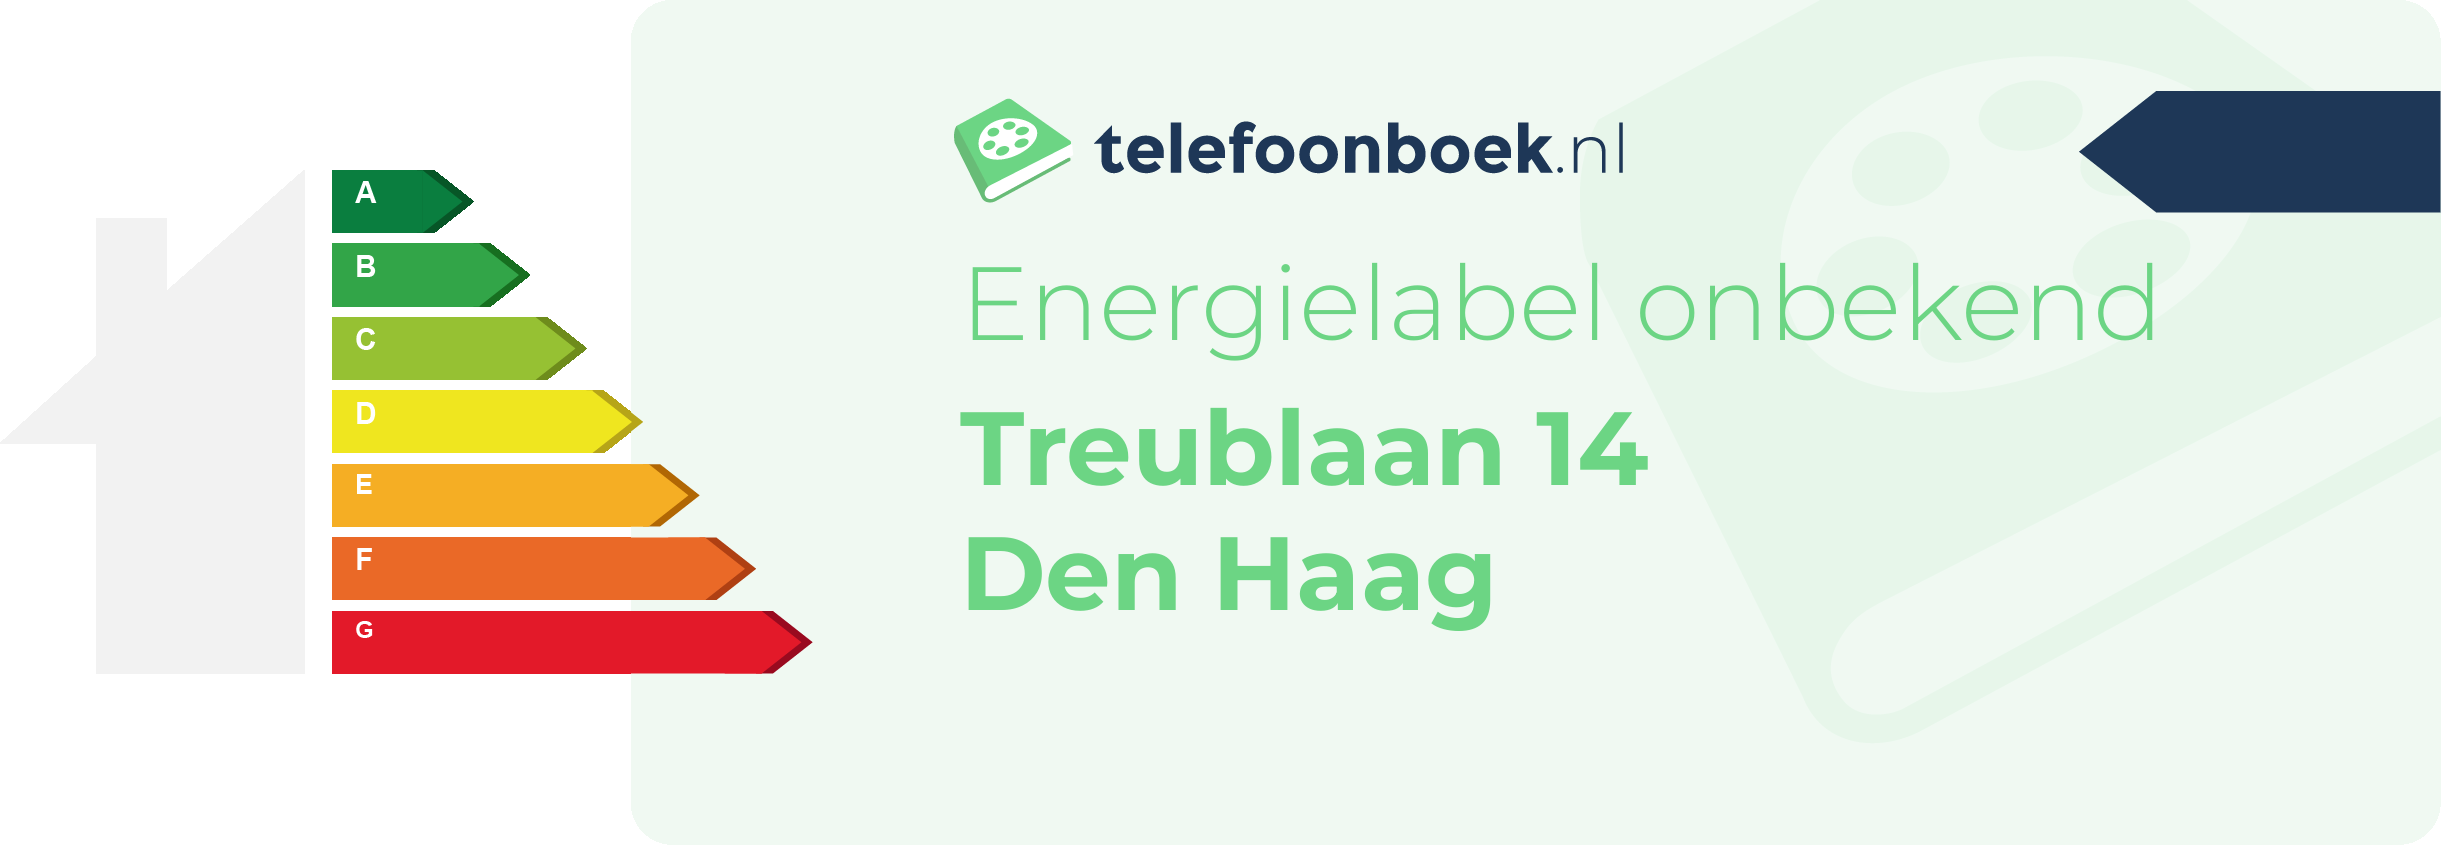 Energielabel Treublaan 14 Den Haag